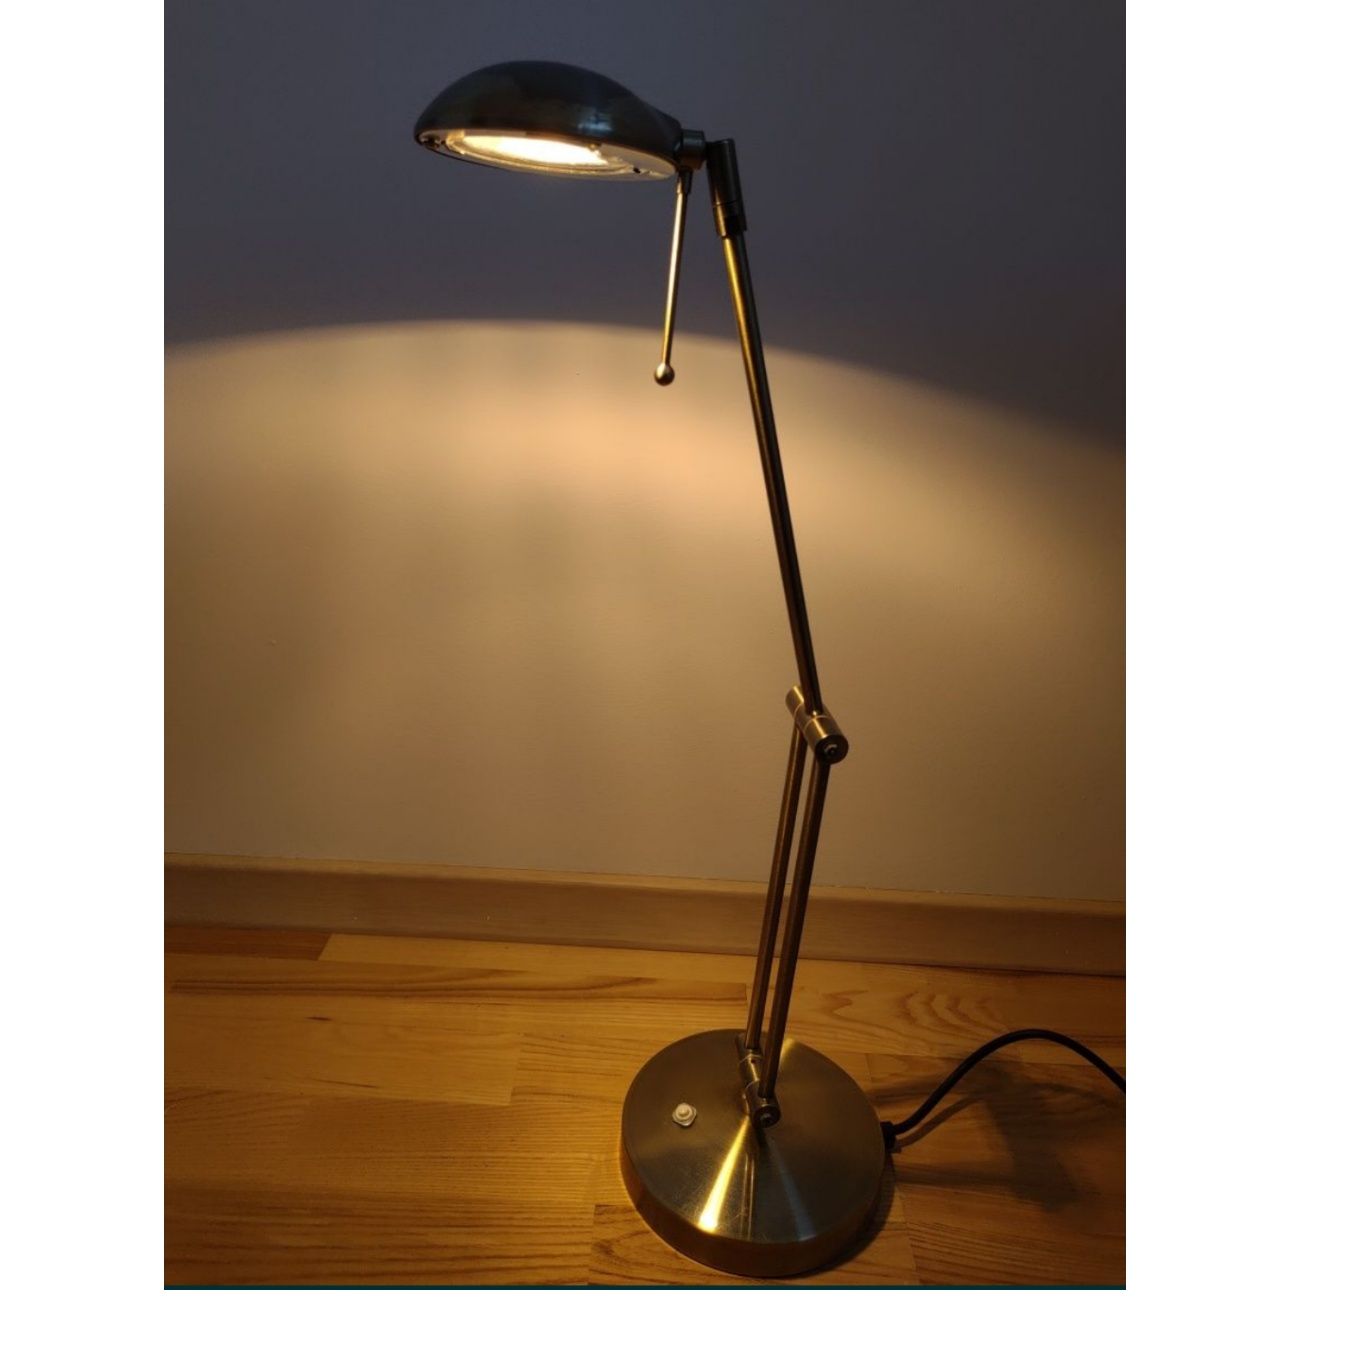 Metalowa lampka biurowa z regulacją kąta światła